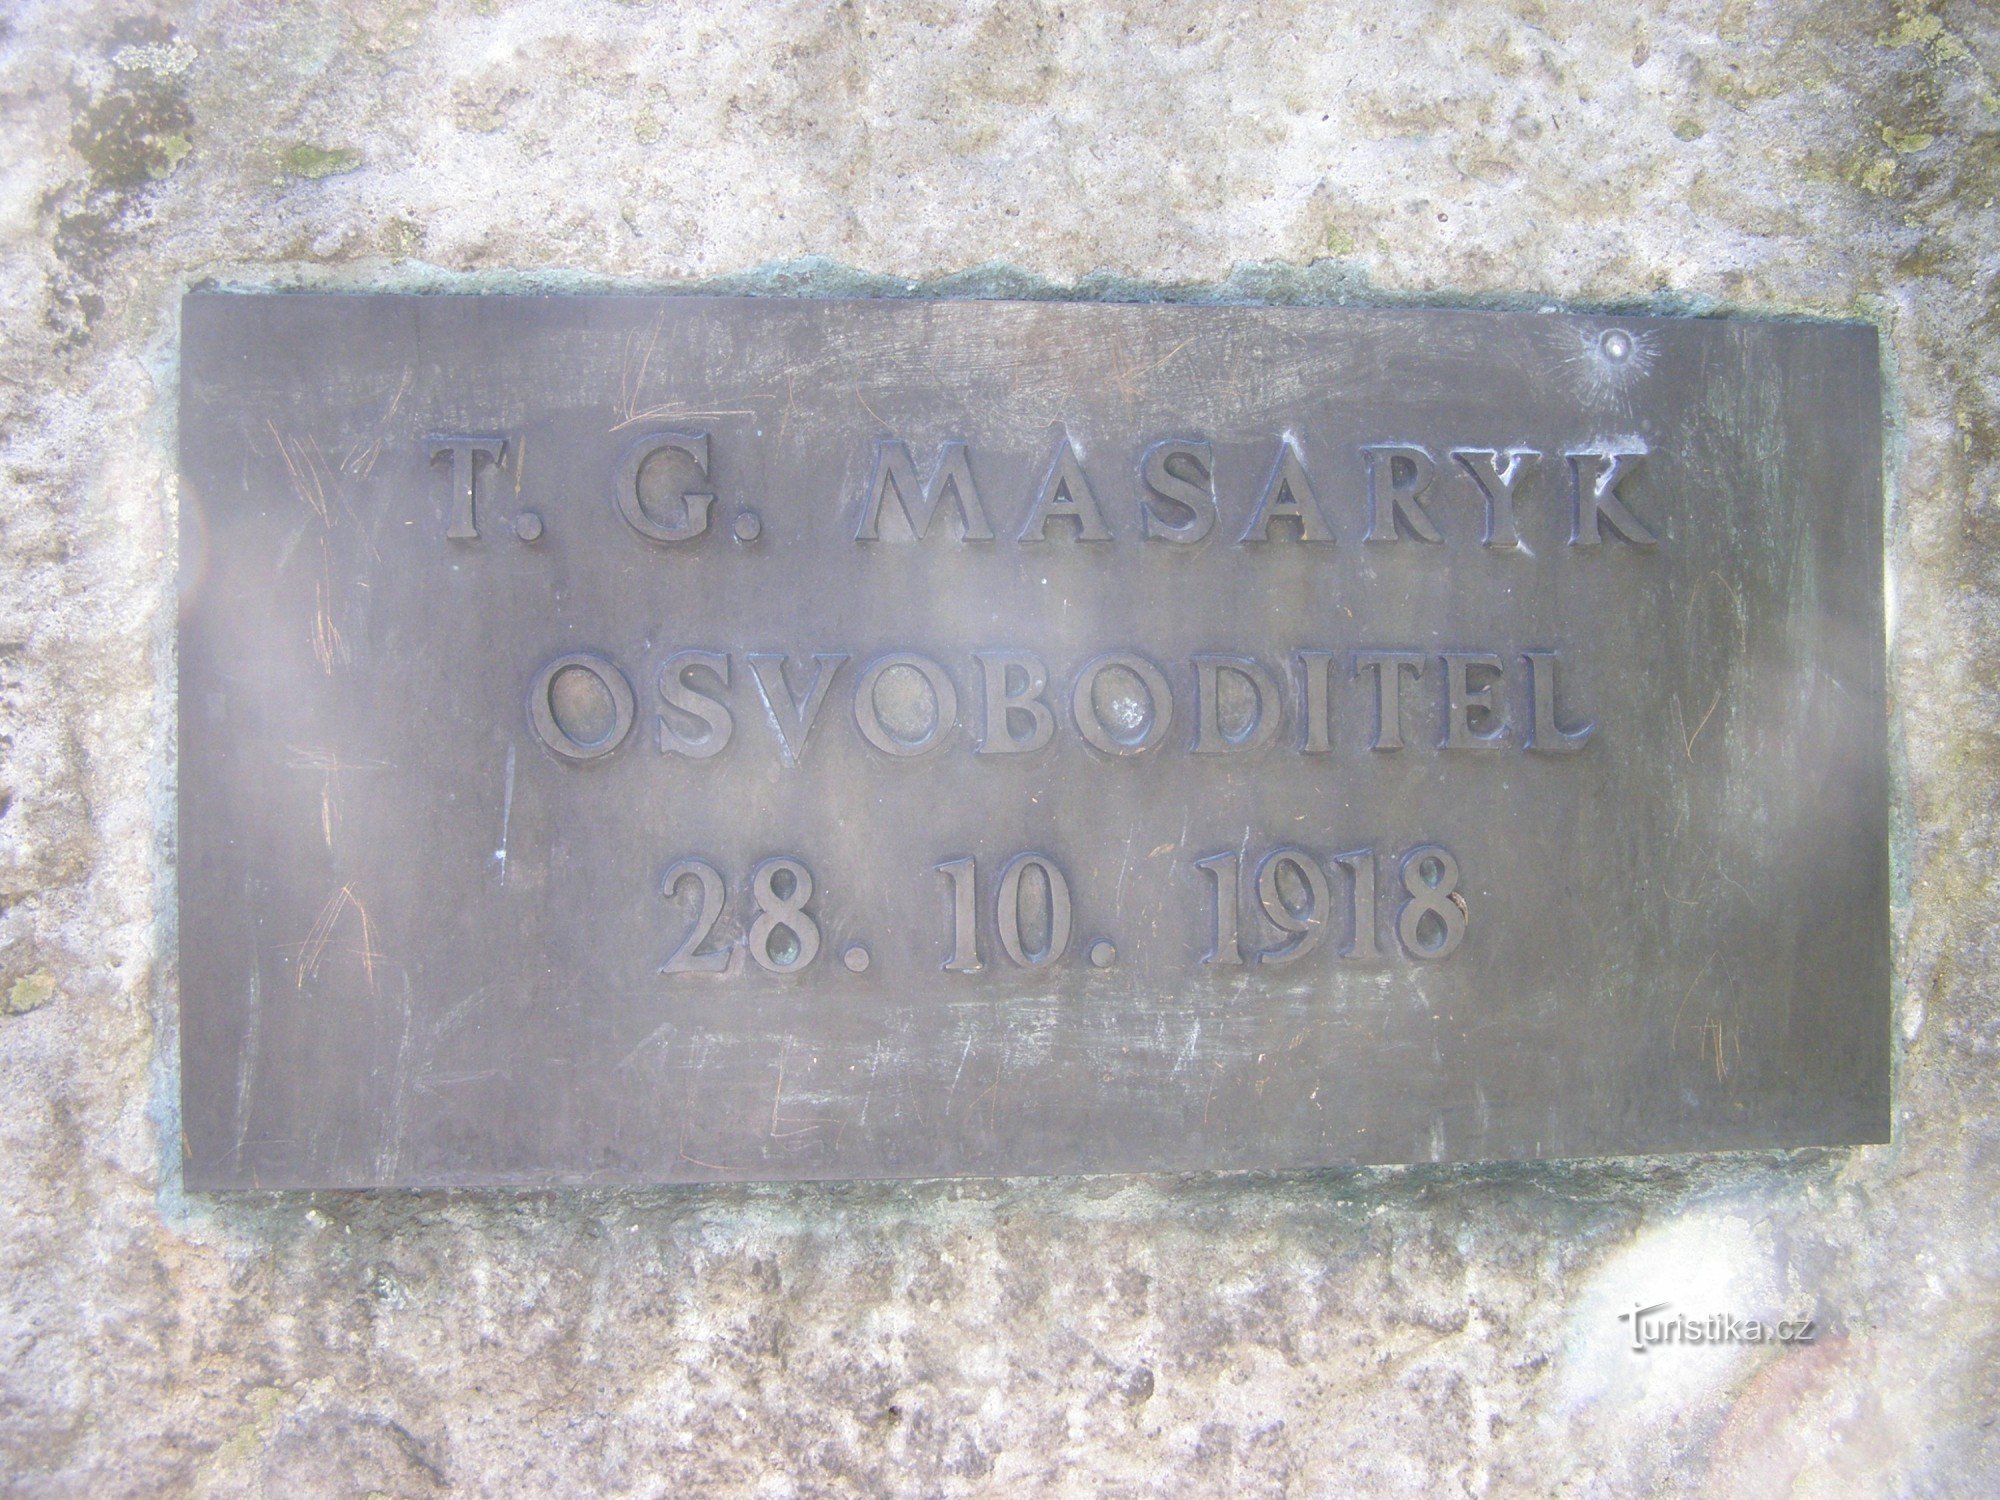 Josefov - TG Masarykin muistomerkki